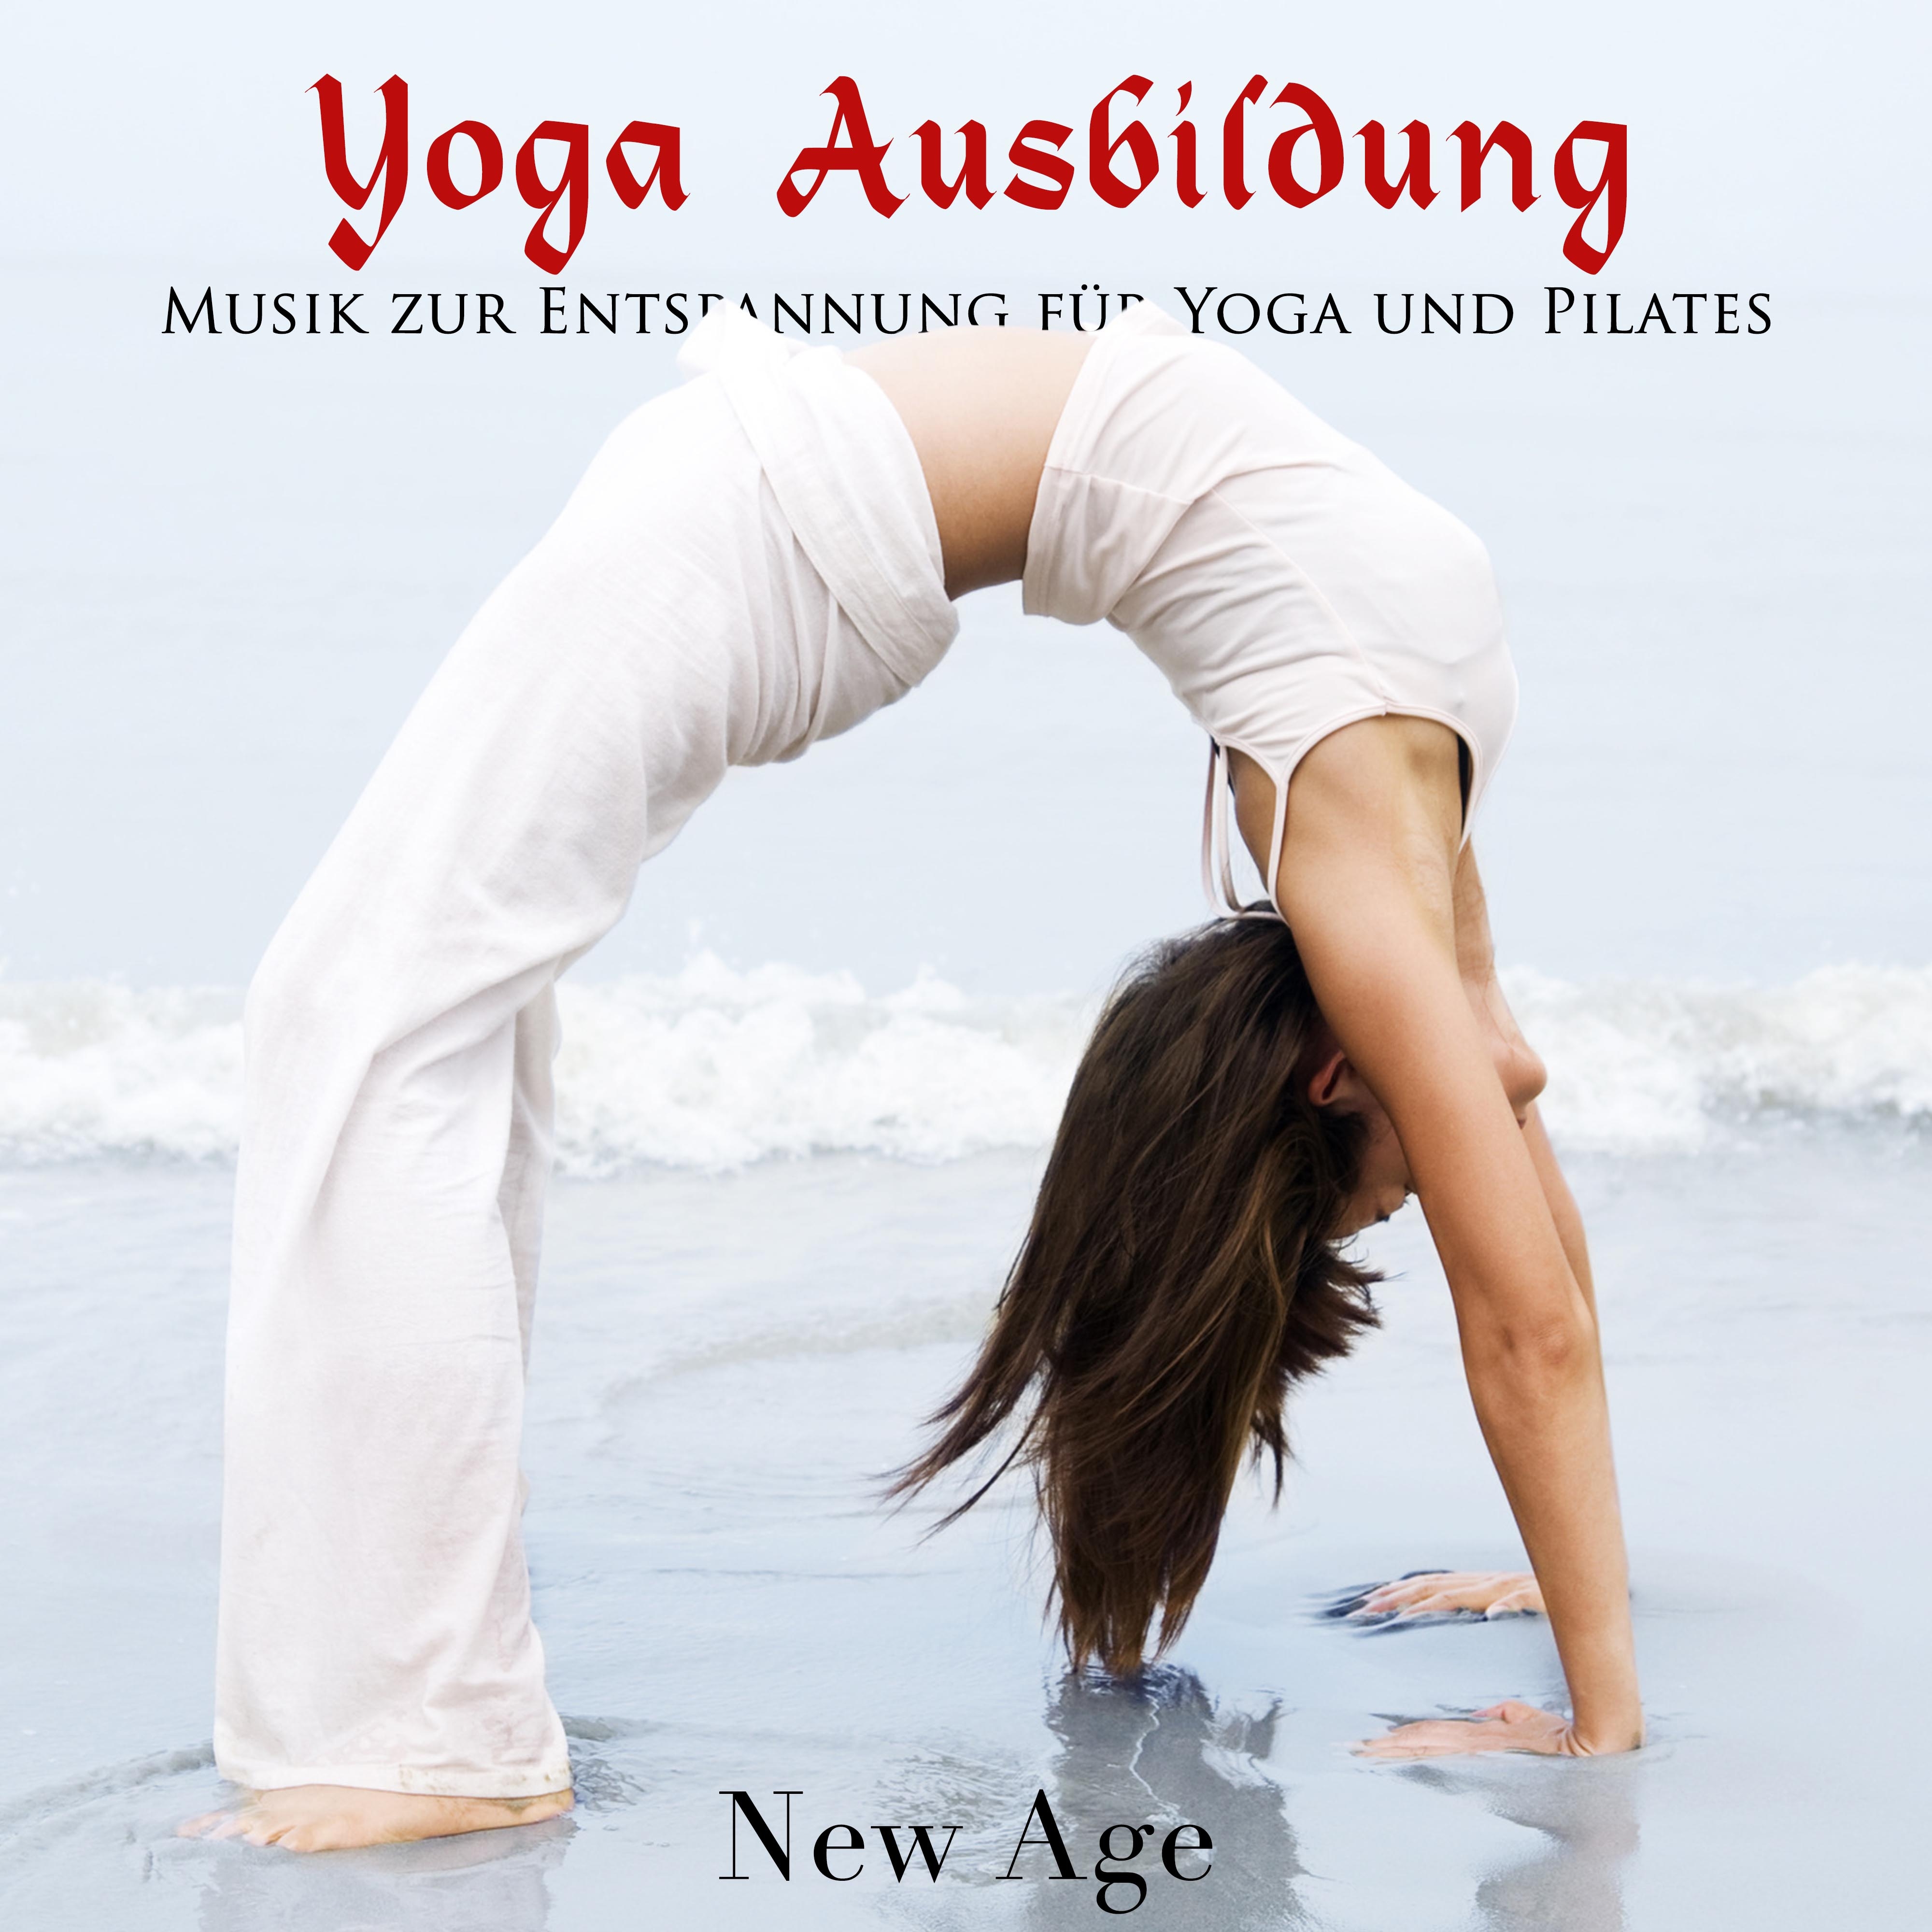 Yoga Ausbildung - Musik zur Entspannung für Yoga und Pilates. Total Relax